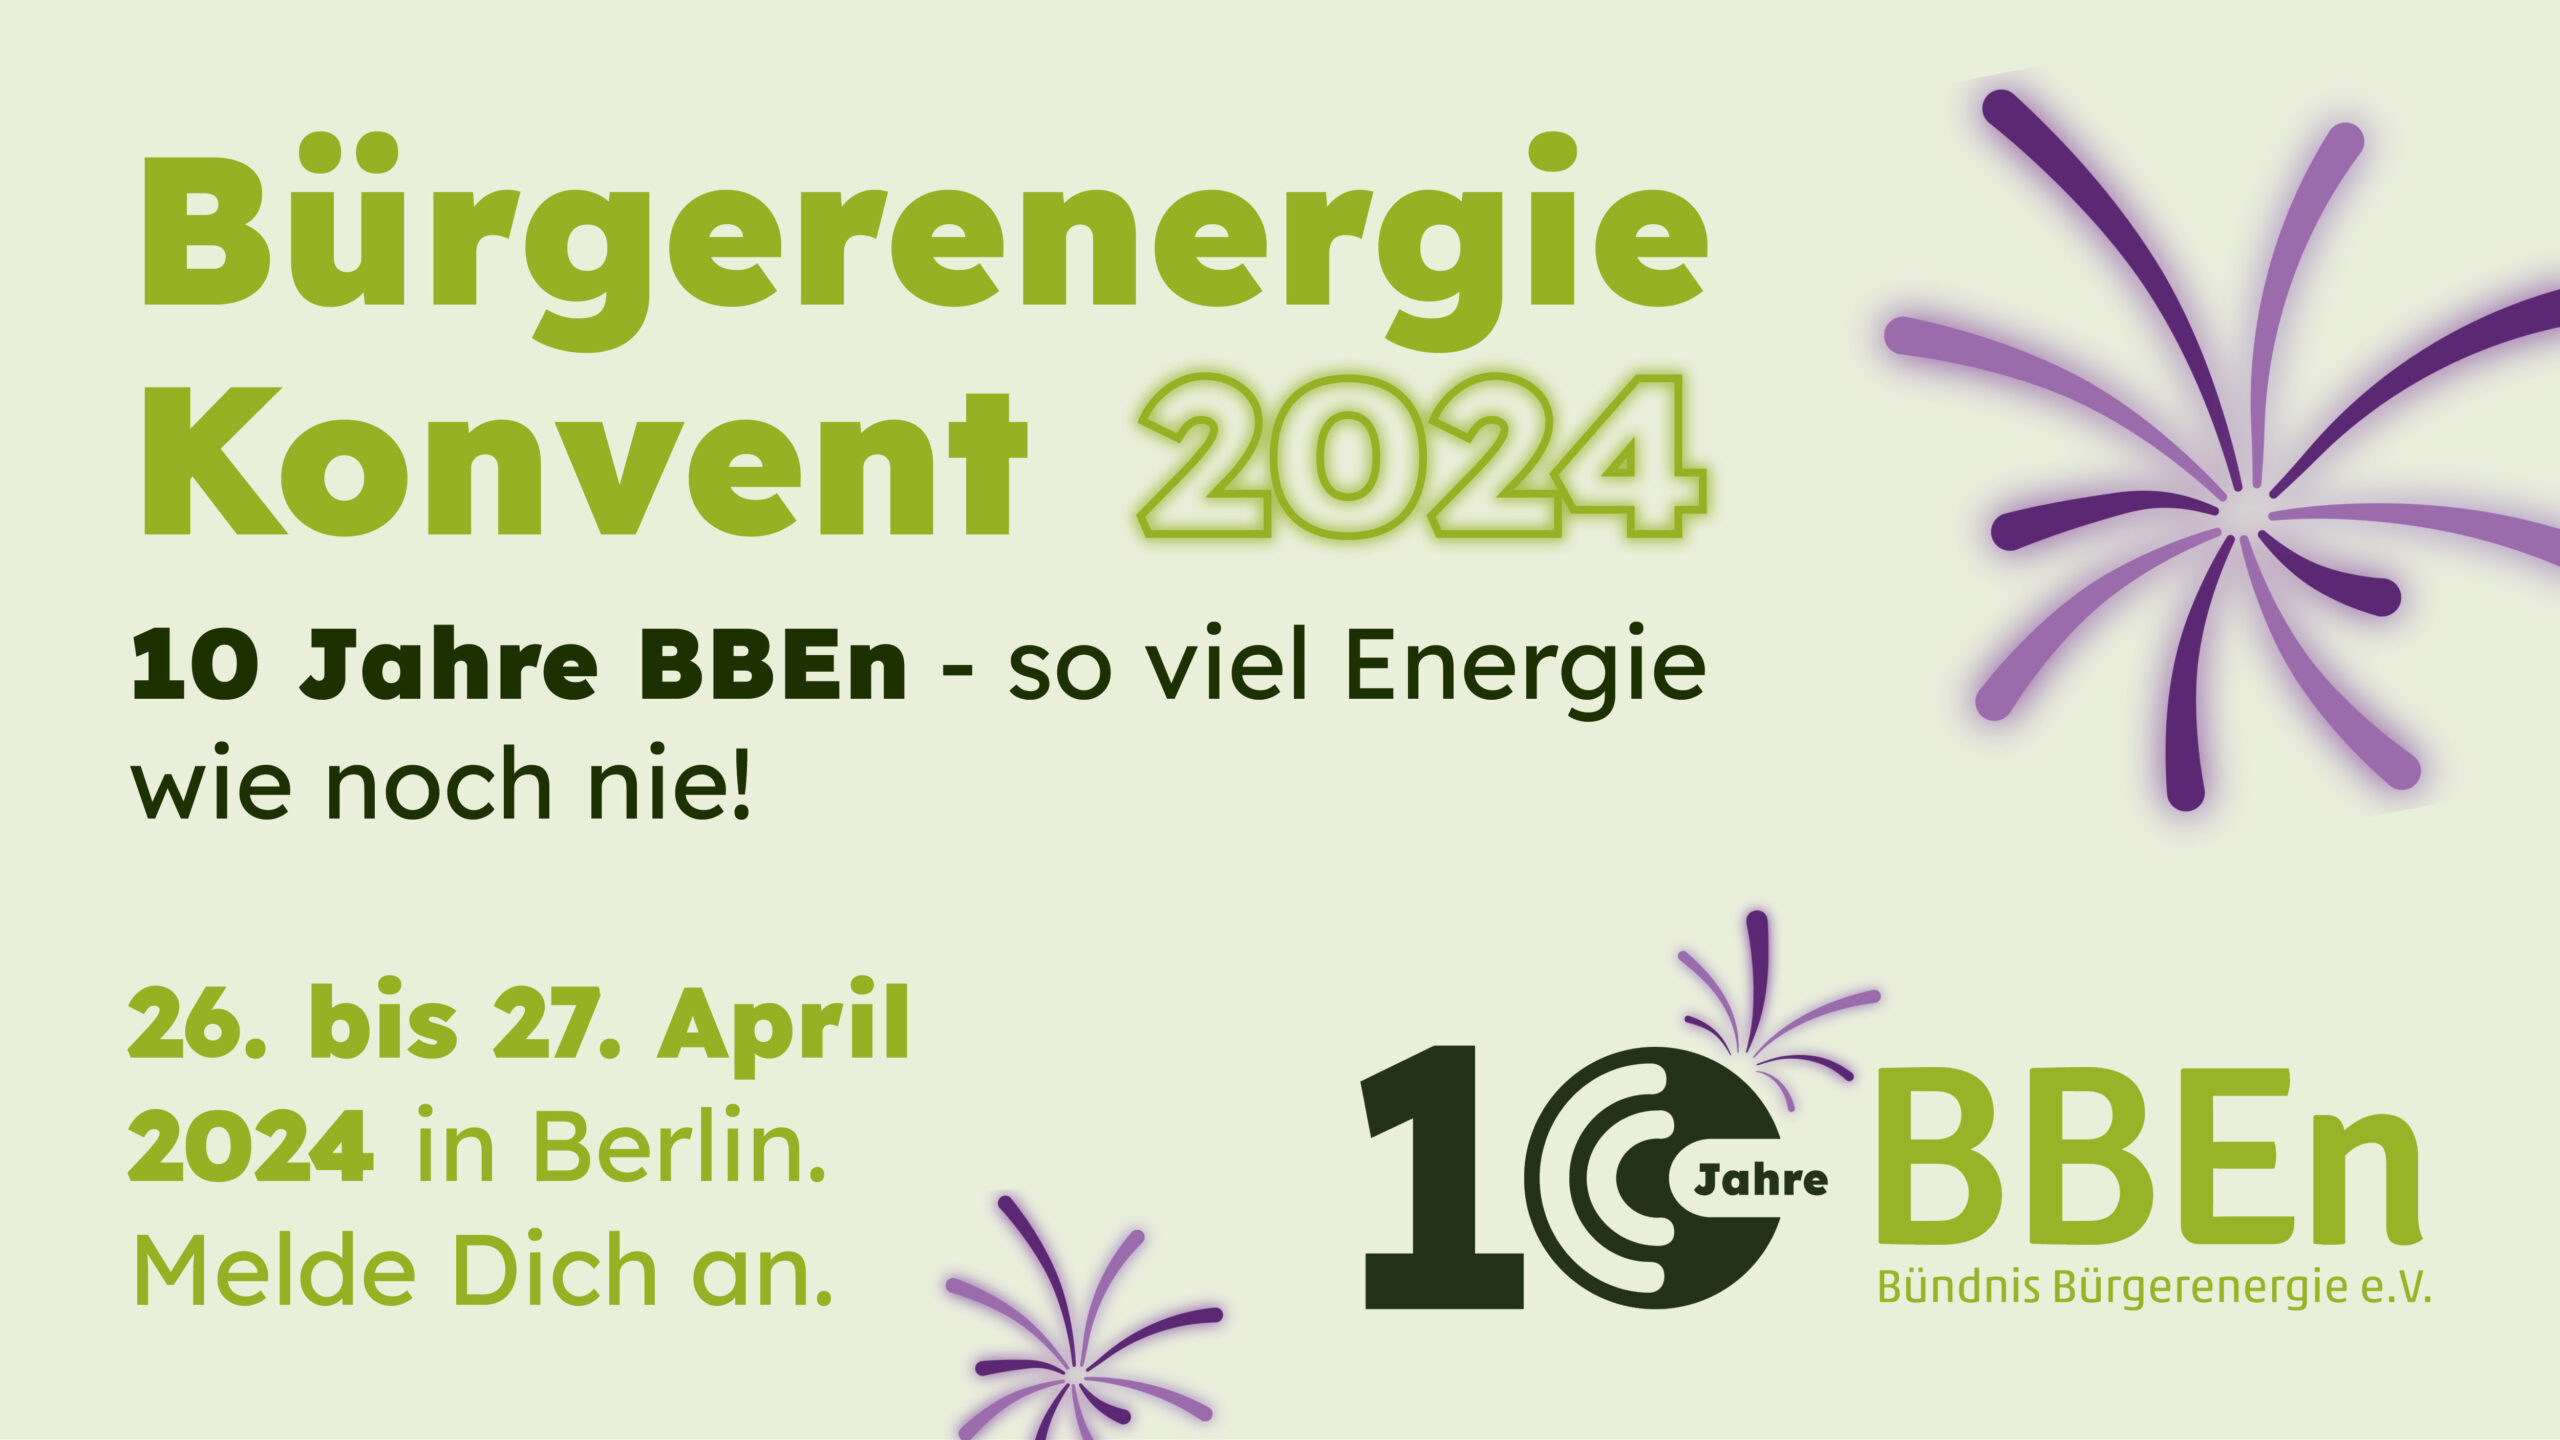 Veranstaltungsmotiv Bürgerenergie Konvent Berlin